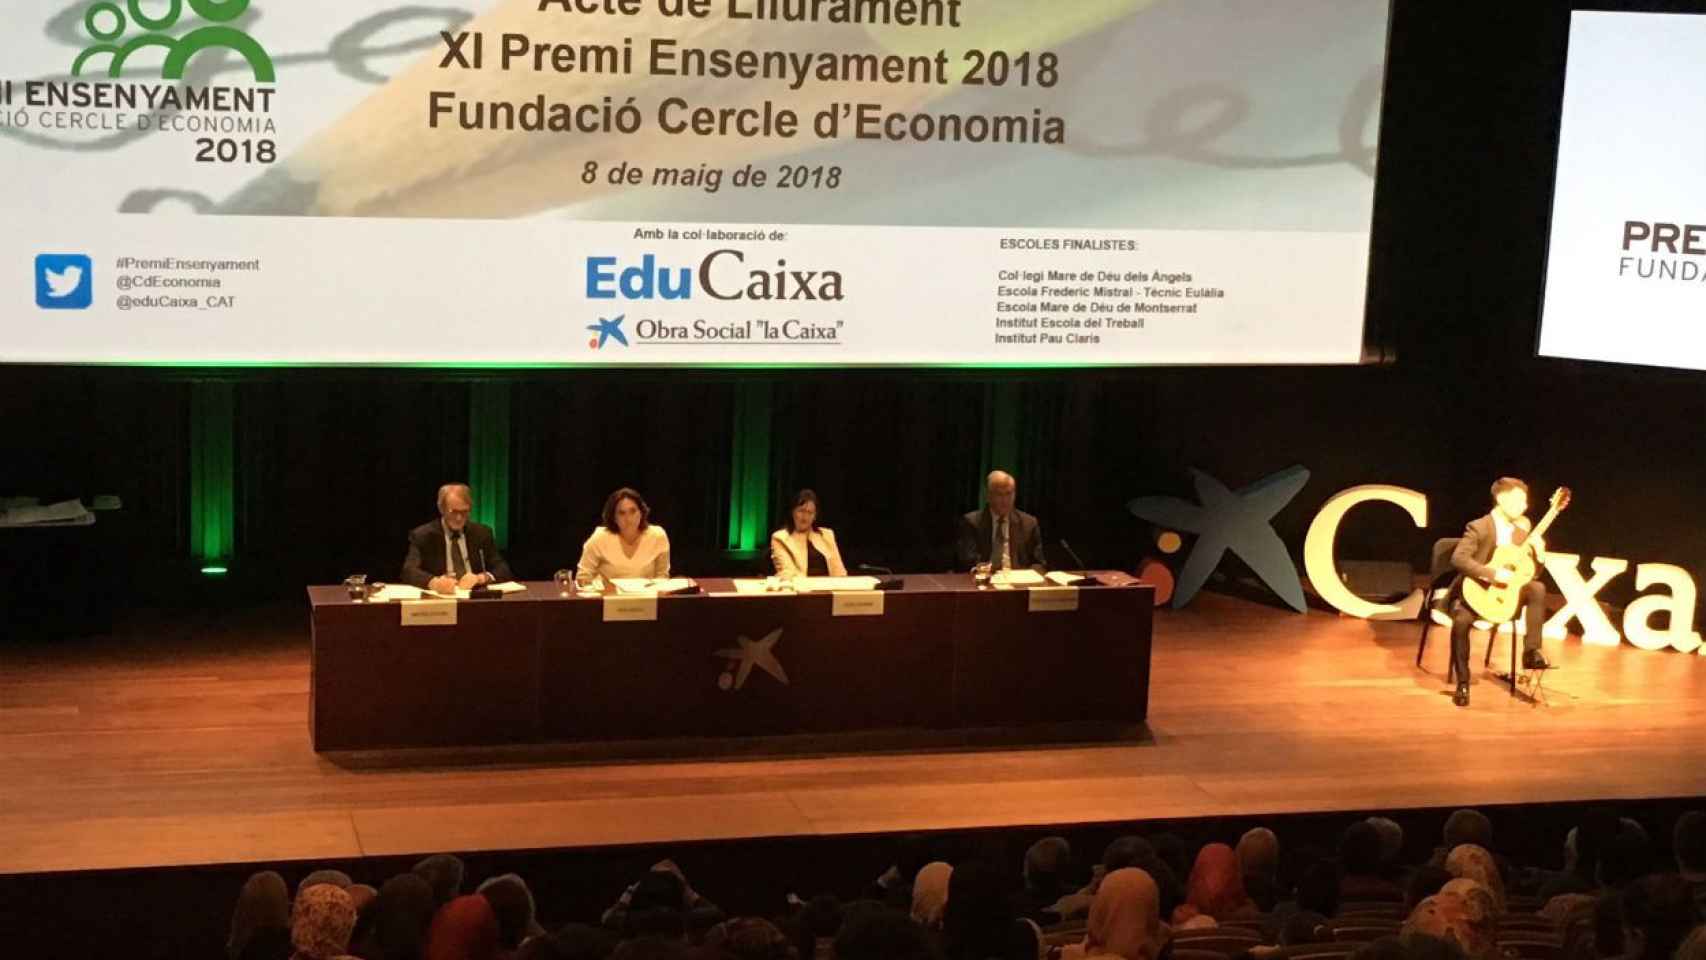 El acto de entrega del Premi Ensenyament Fundació Cercle d'Economia 2018 ha tenido lugar en el CaixaForum, con la presencia de la alcaldesa de Barcelona, Ada Colau / MIKI